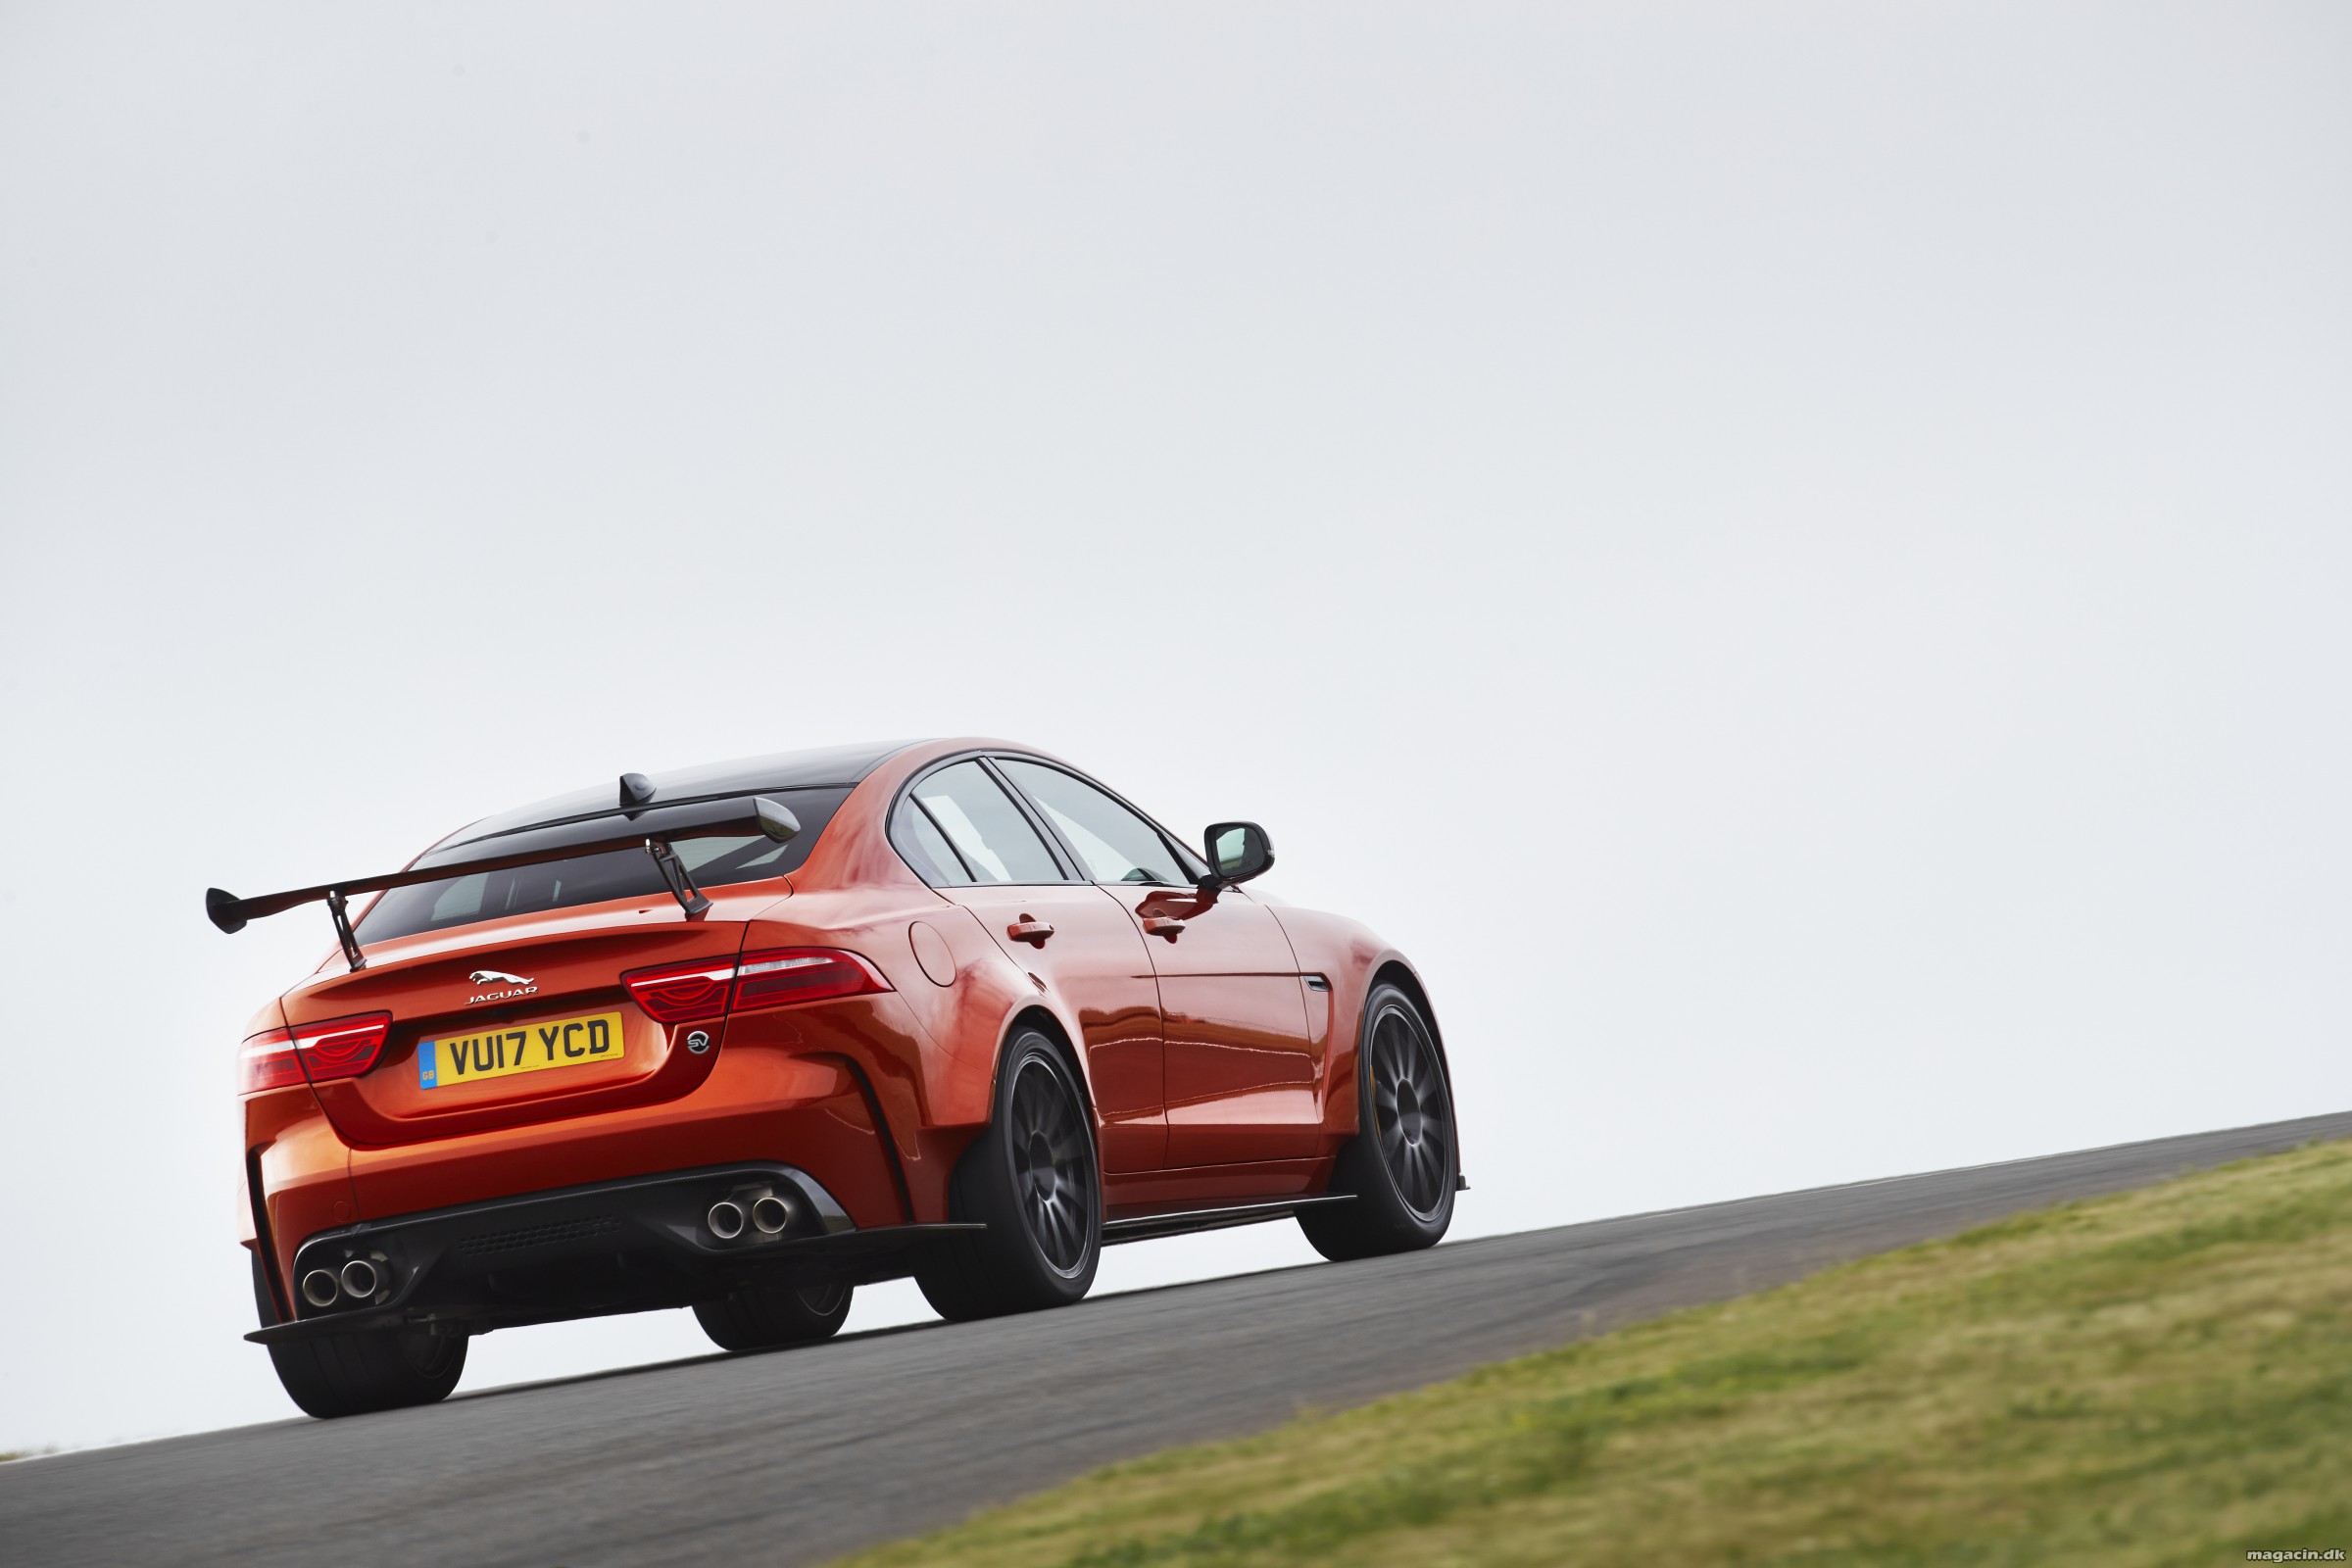 Jaguar frigiver deres hurtigste personbil